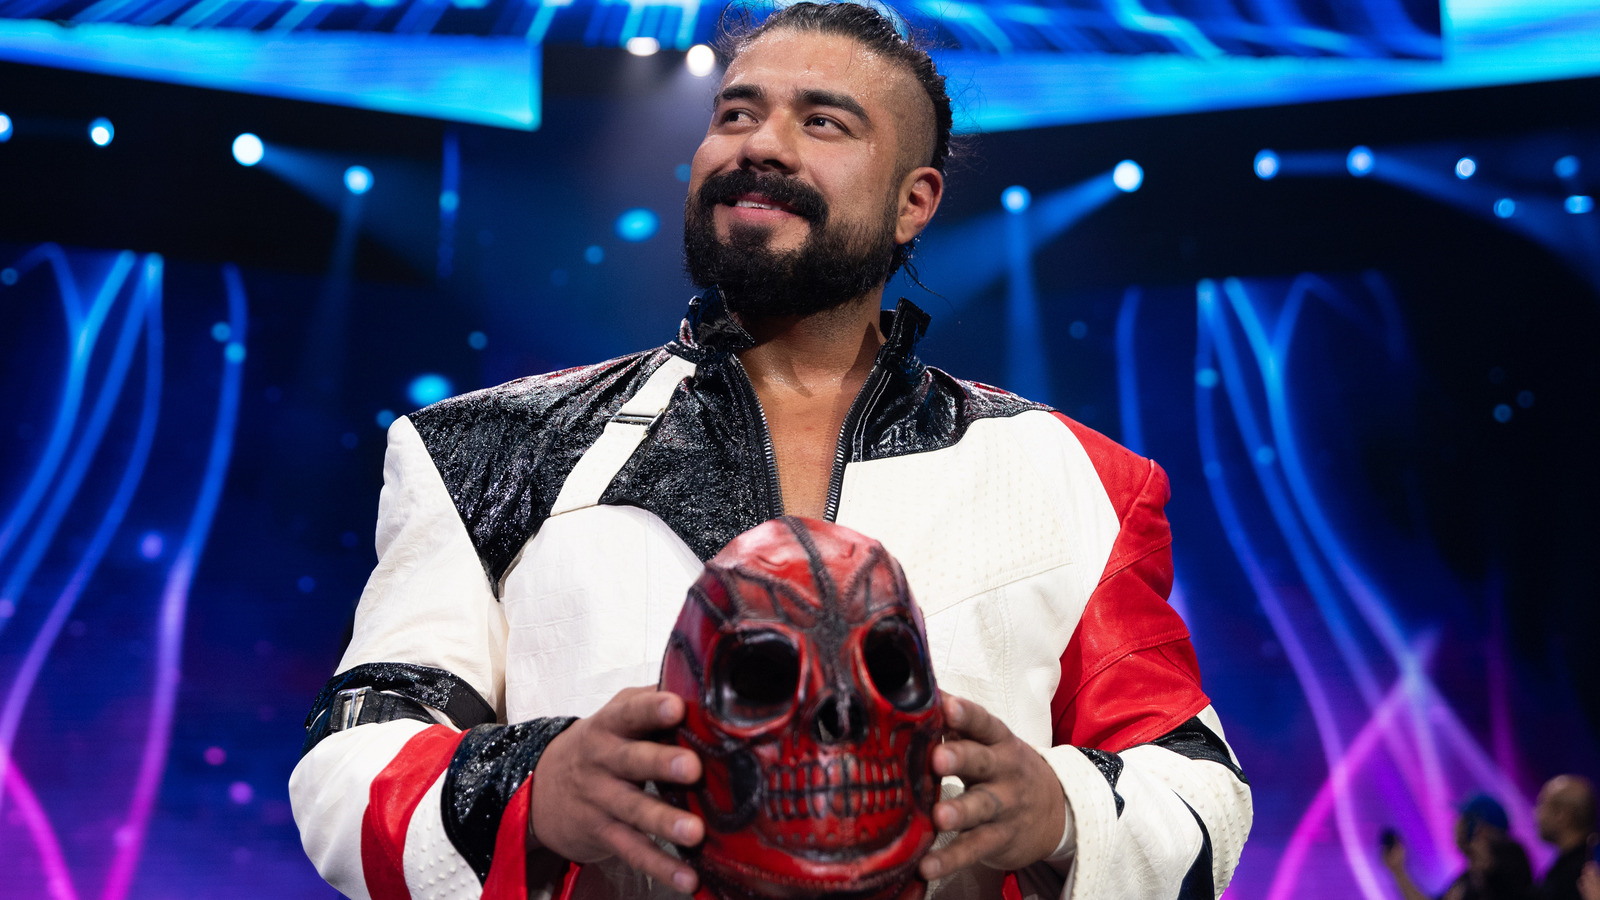 Detalles detrás del escenario sobre la próxima temporada en CMLL de la estrella de AEW Andrade El Idolo